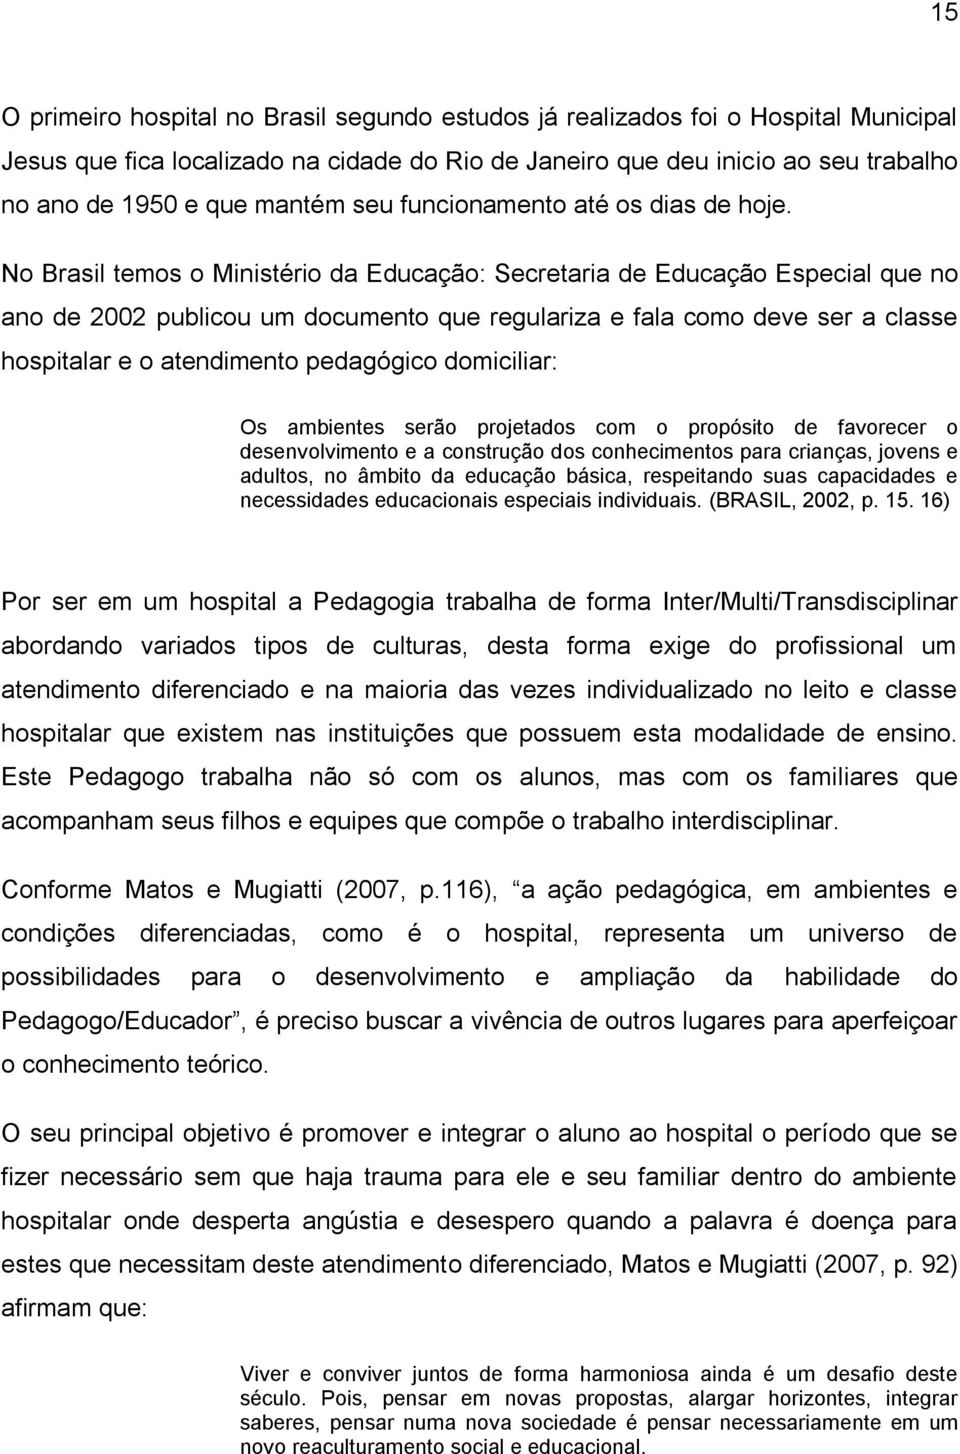 No Brasil temos o Ministério da Educação: Secretaria de Educação Especial que no ano de 2002 publicou um documento que regulariza e fala como deve ser a classe hospitalar e o atendimento pedagógico